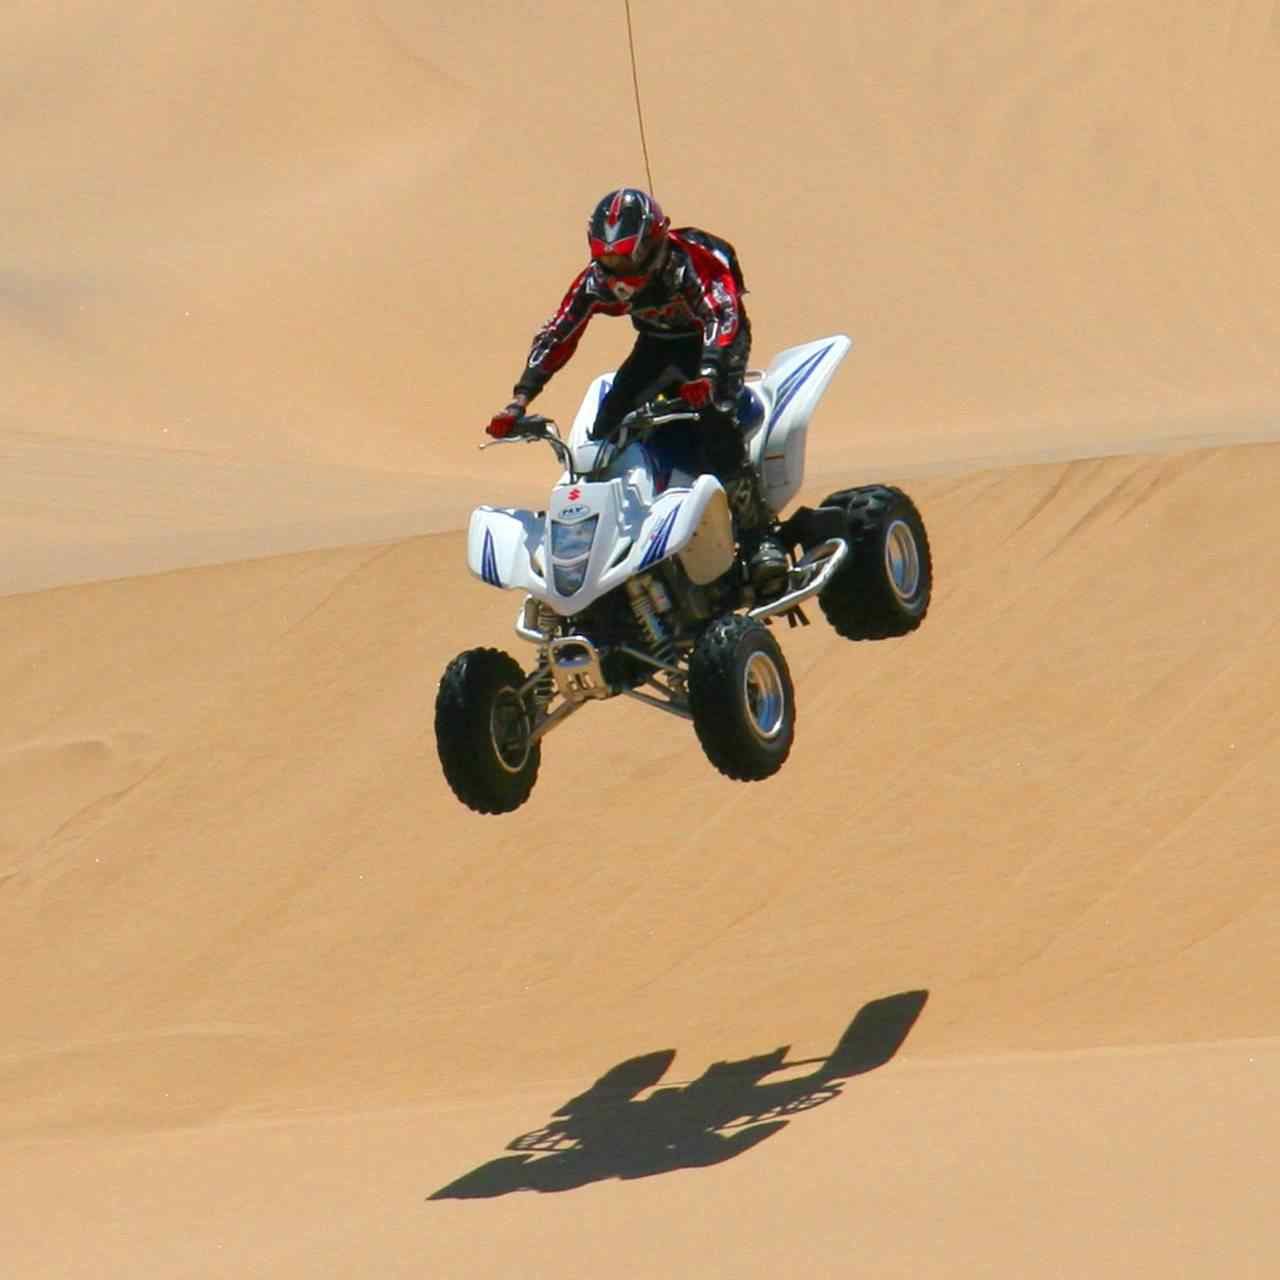 Thrilling Dune Bashing In The Desert Of Dubai